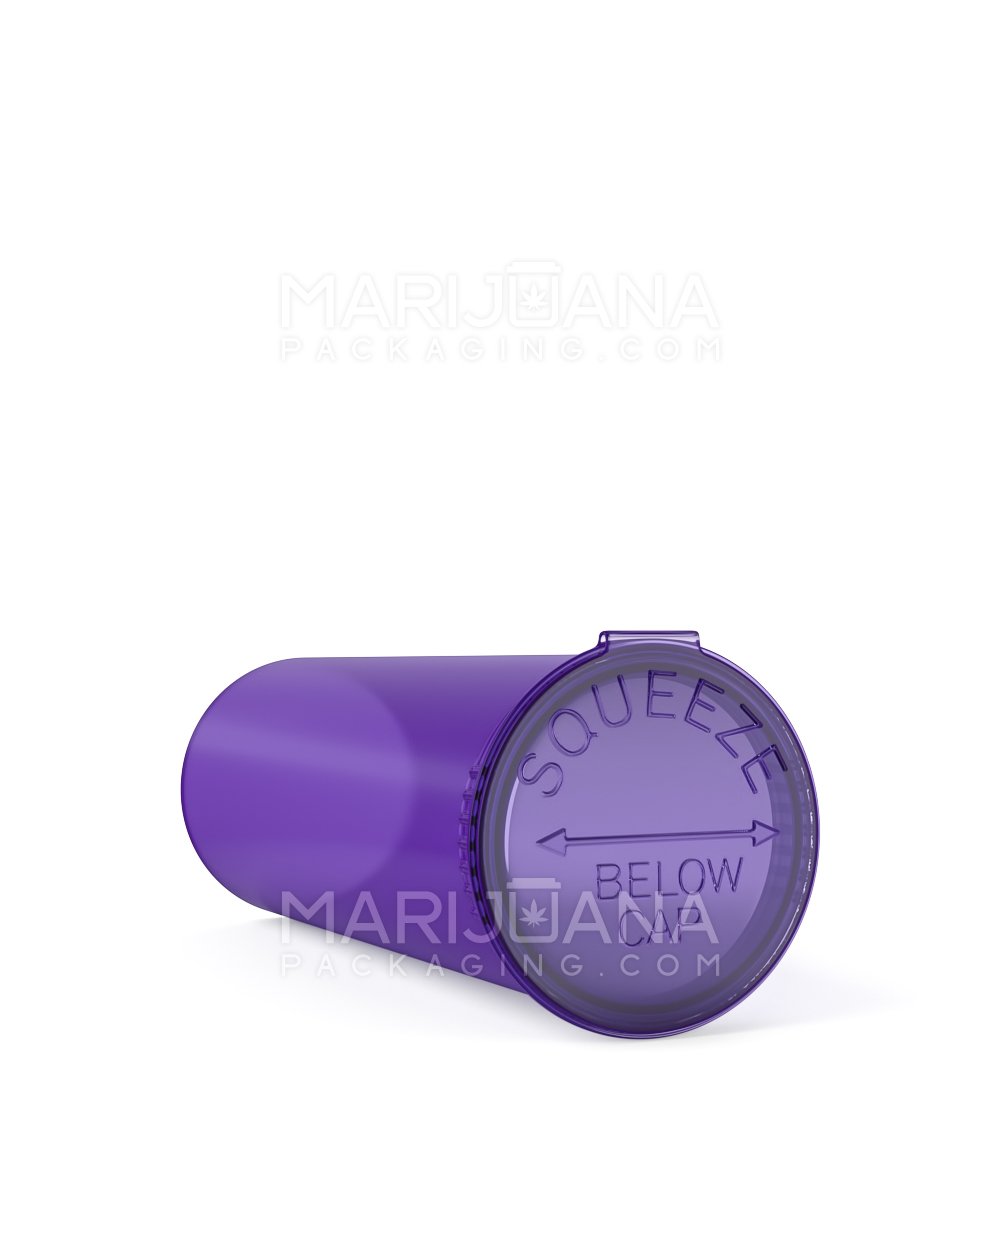 Child Resistant | Transparent Purple Pop Top Bottles | 60dr - 14g - 75 Count - 3